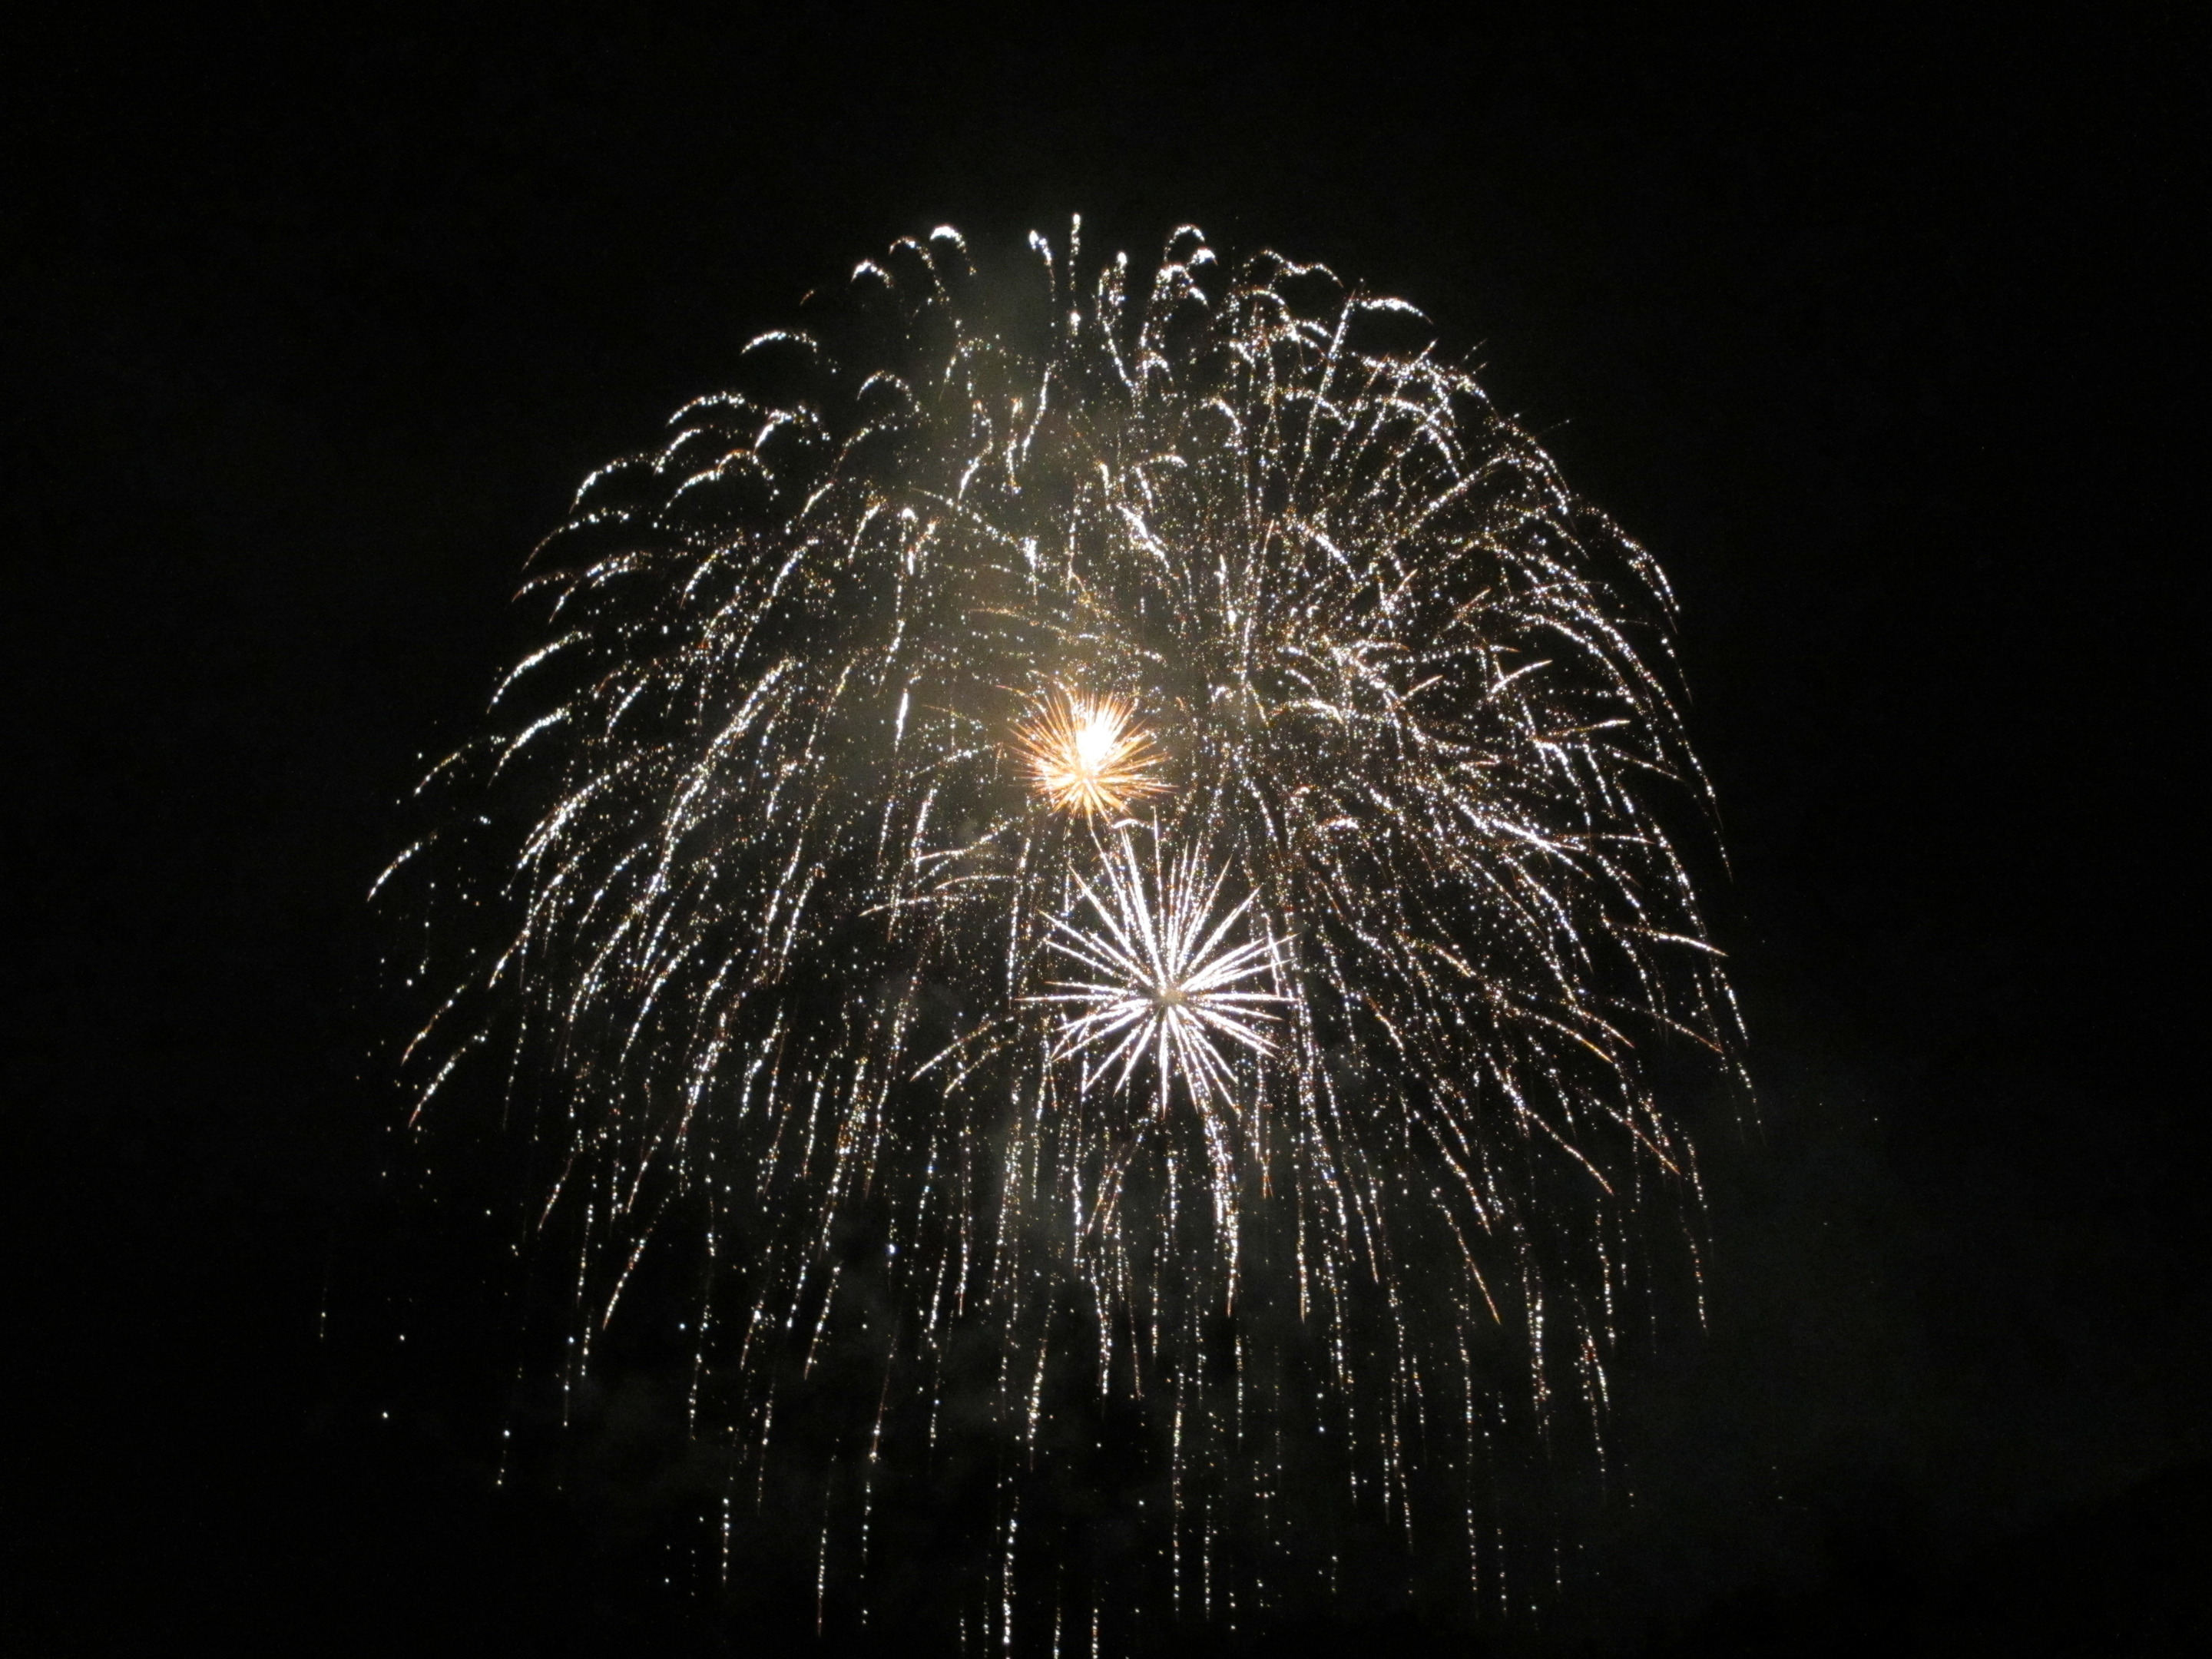 夏といえば花火大会。写真は２０１６ながさきみなとまつりの花火です。長崎市出身福山雅治さんの楽曲を奏でながら、夏の夜空を彩りました。